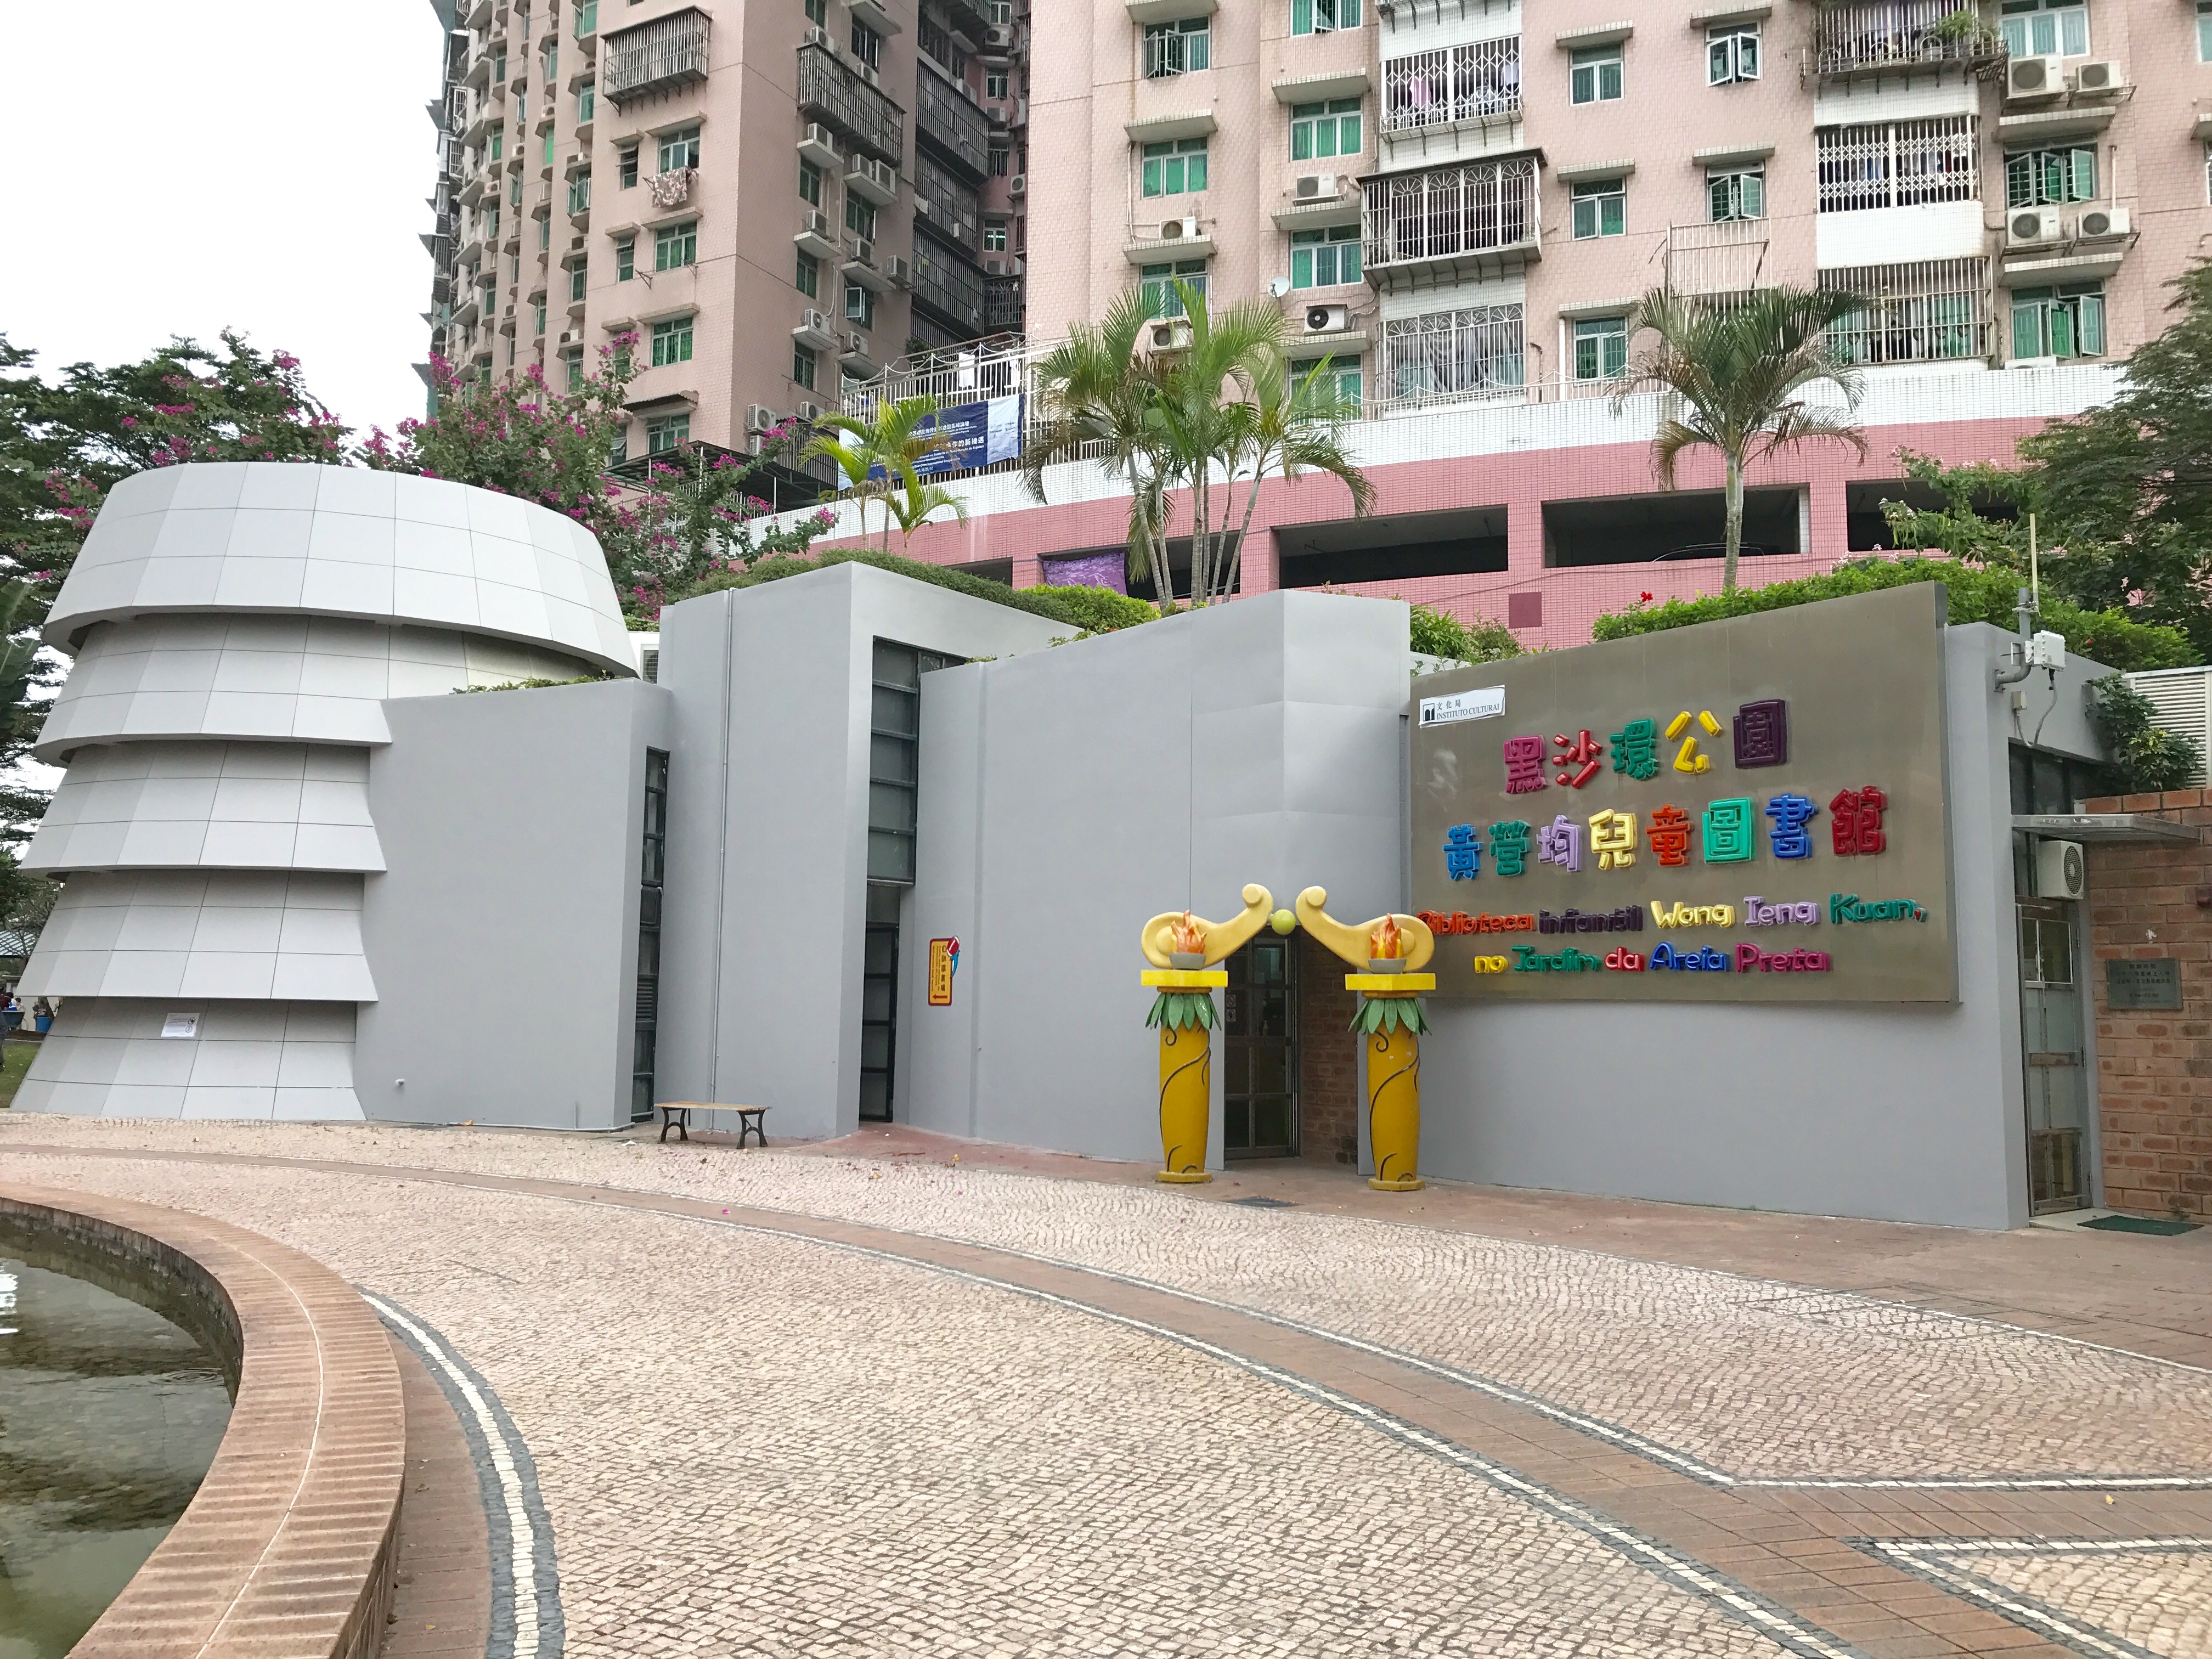 Biblioteca Infantil Wong Ieng Kuan no Jardim da Areia Preta